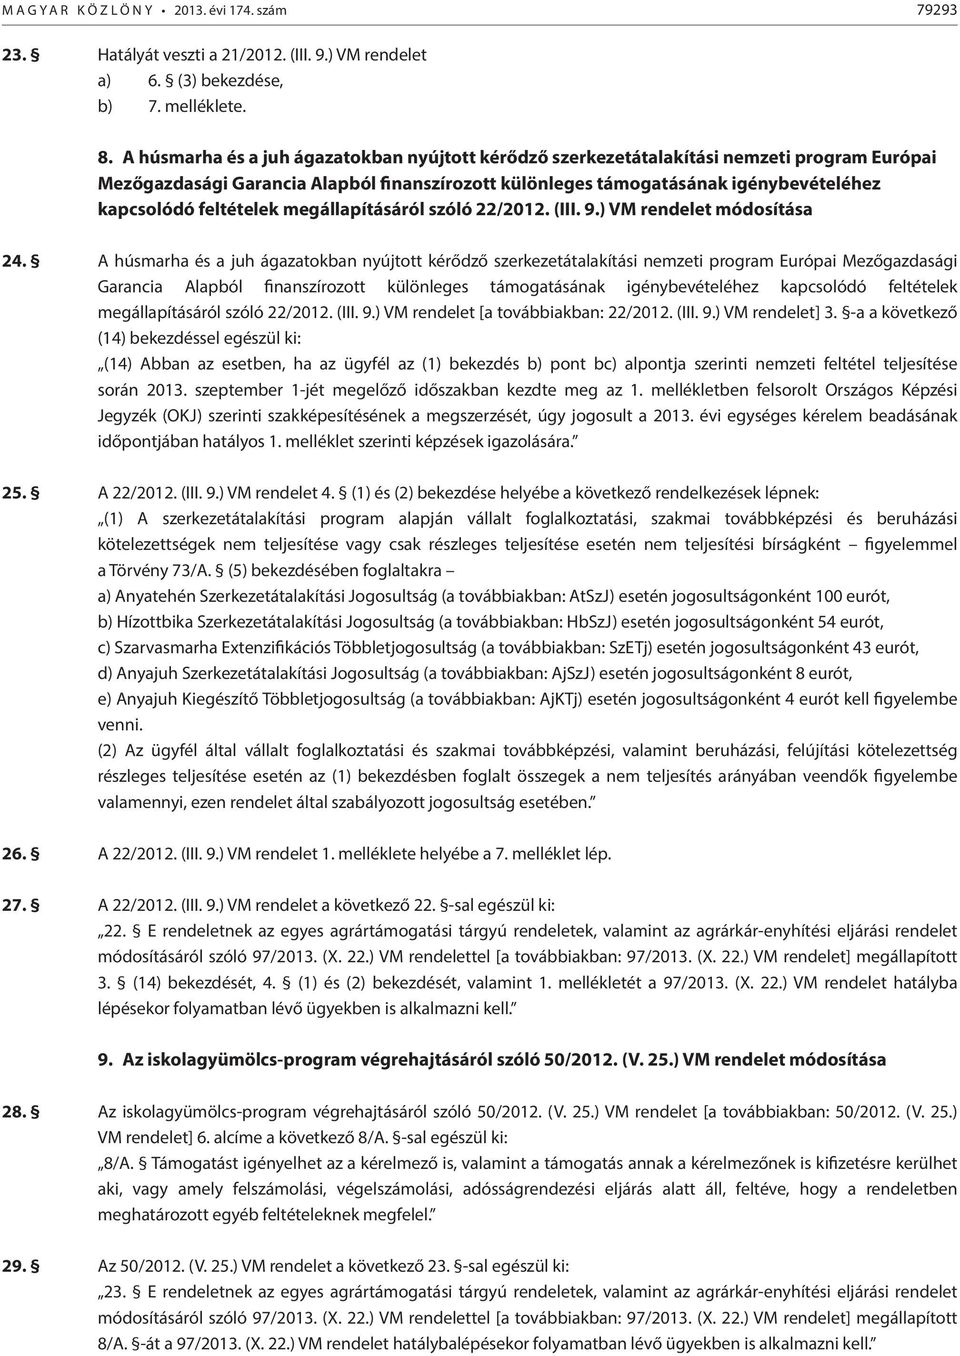 feltételek megállapításáról szóló 22/2012. (III. 9.) VM rendelet módosítása 24.  feltételek megállapításáról szóló 22/2012. (III. 9.) VM rendelet [a továbbiakban: 22/2012. (III. 9.) VM rendelet] 3.